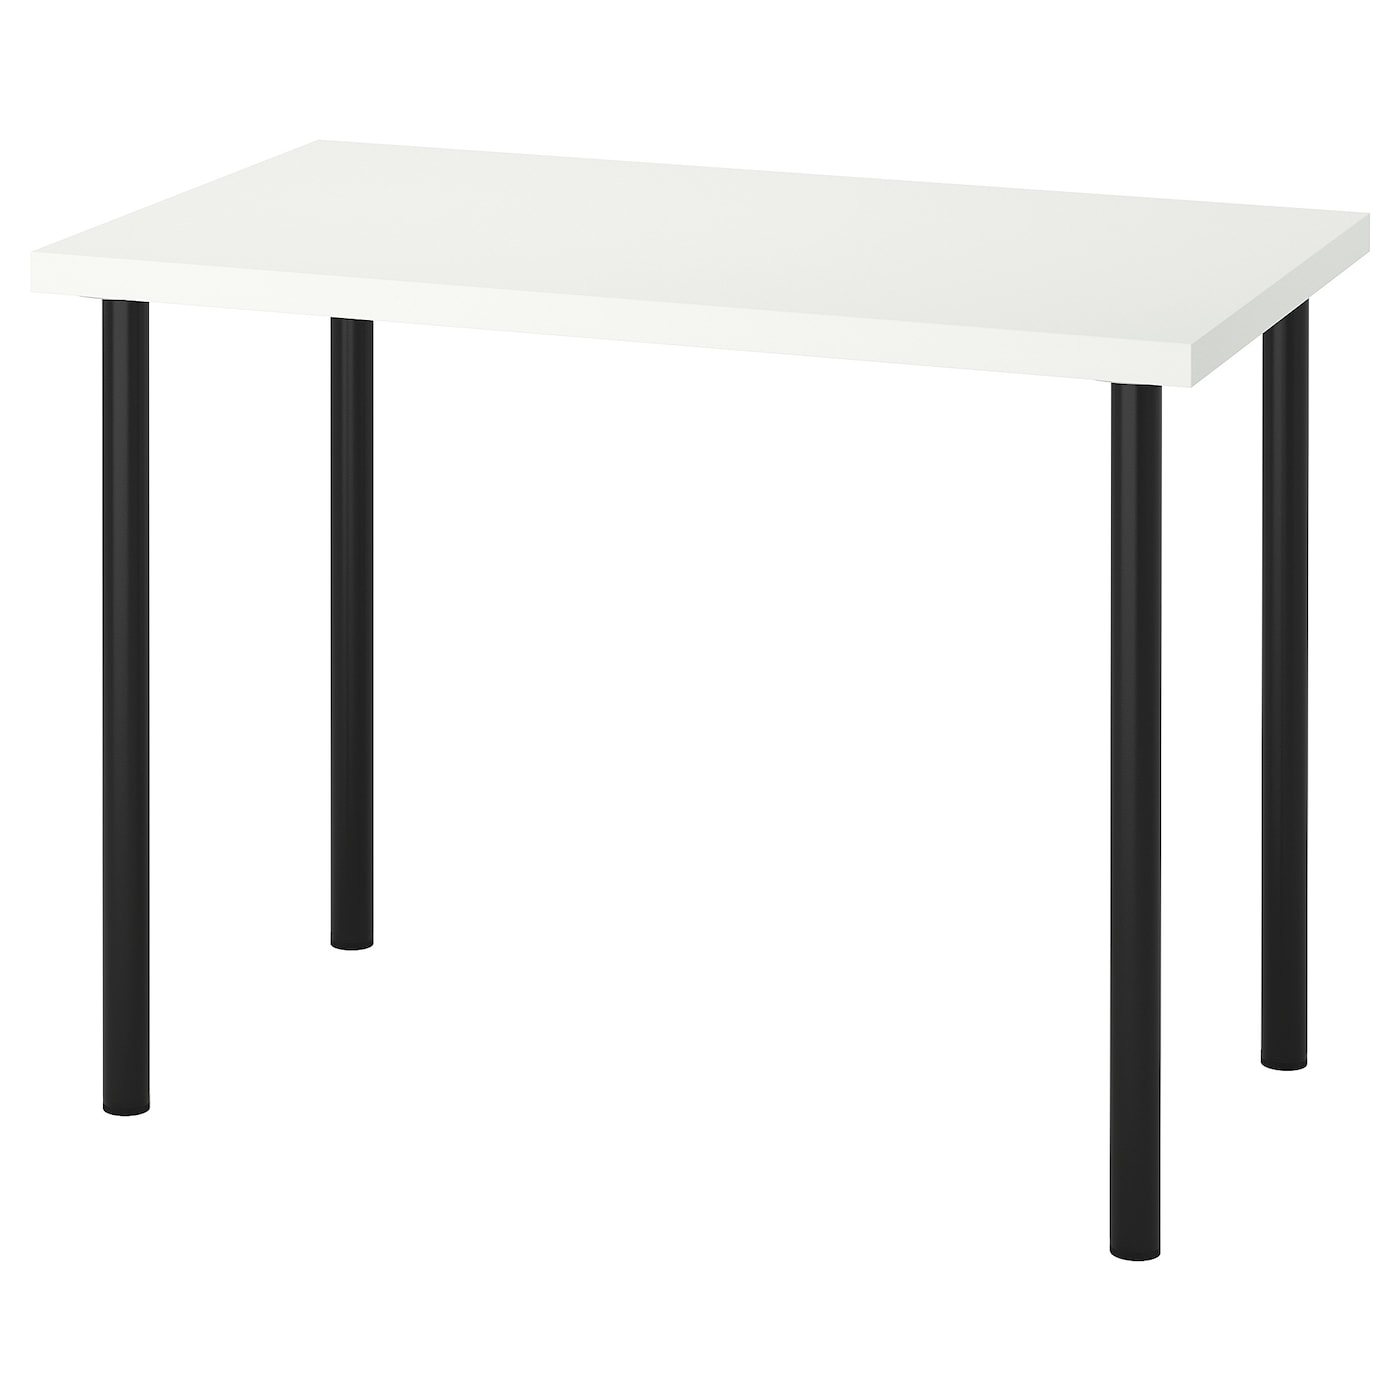 Письменный стол - IKEA LINNMON/ADILS, 100x60 см, белый/черный, ЛИННМОН/АДИЛЬС ИКЕА